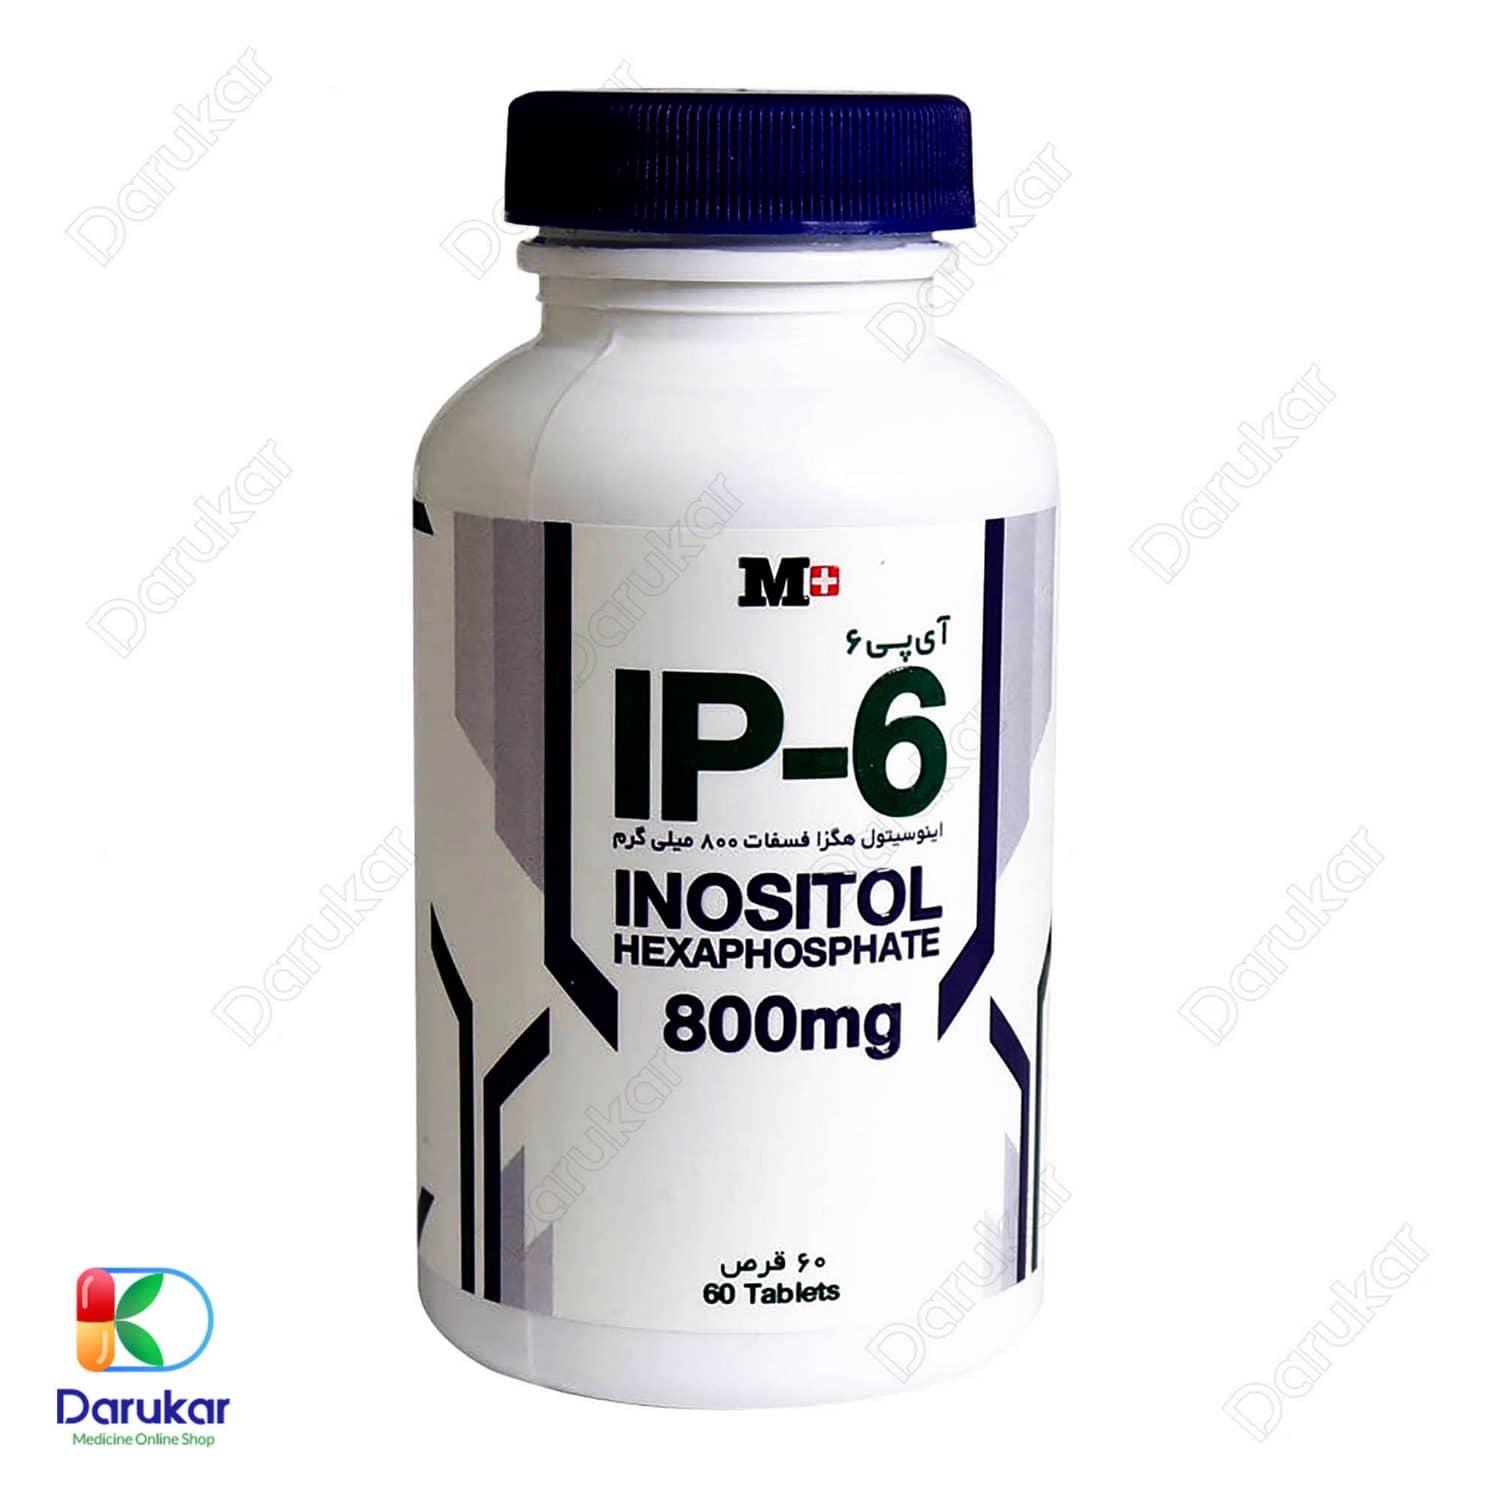 M Plus IP 6 Inositol Hexaphosphate 800 mg 60 TabletsImage Gallery2